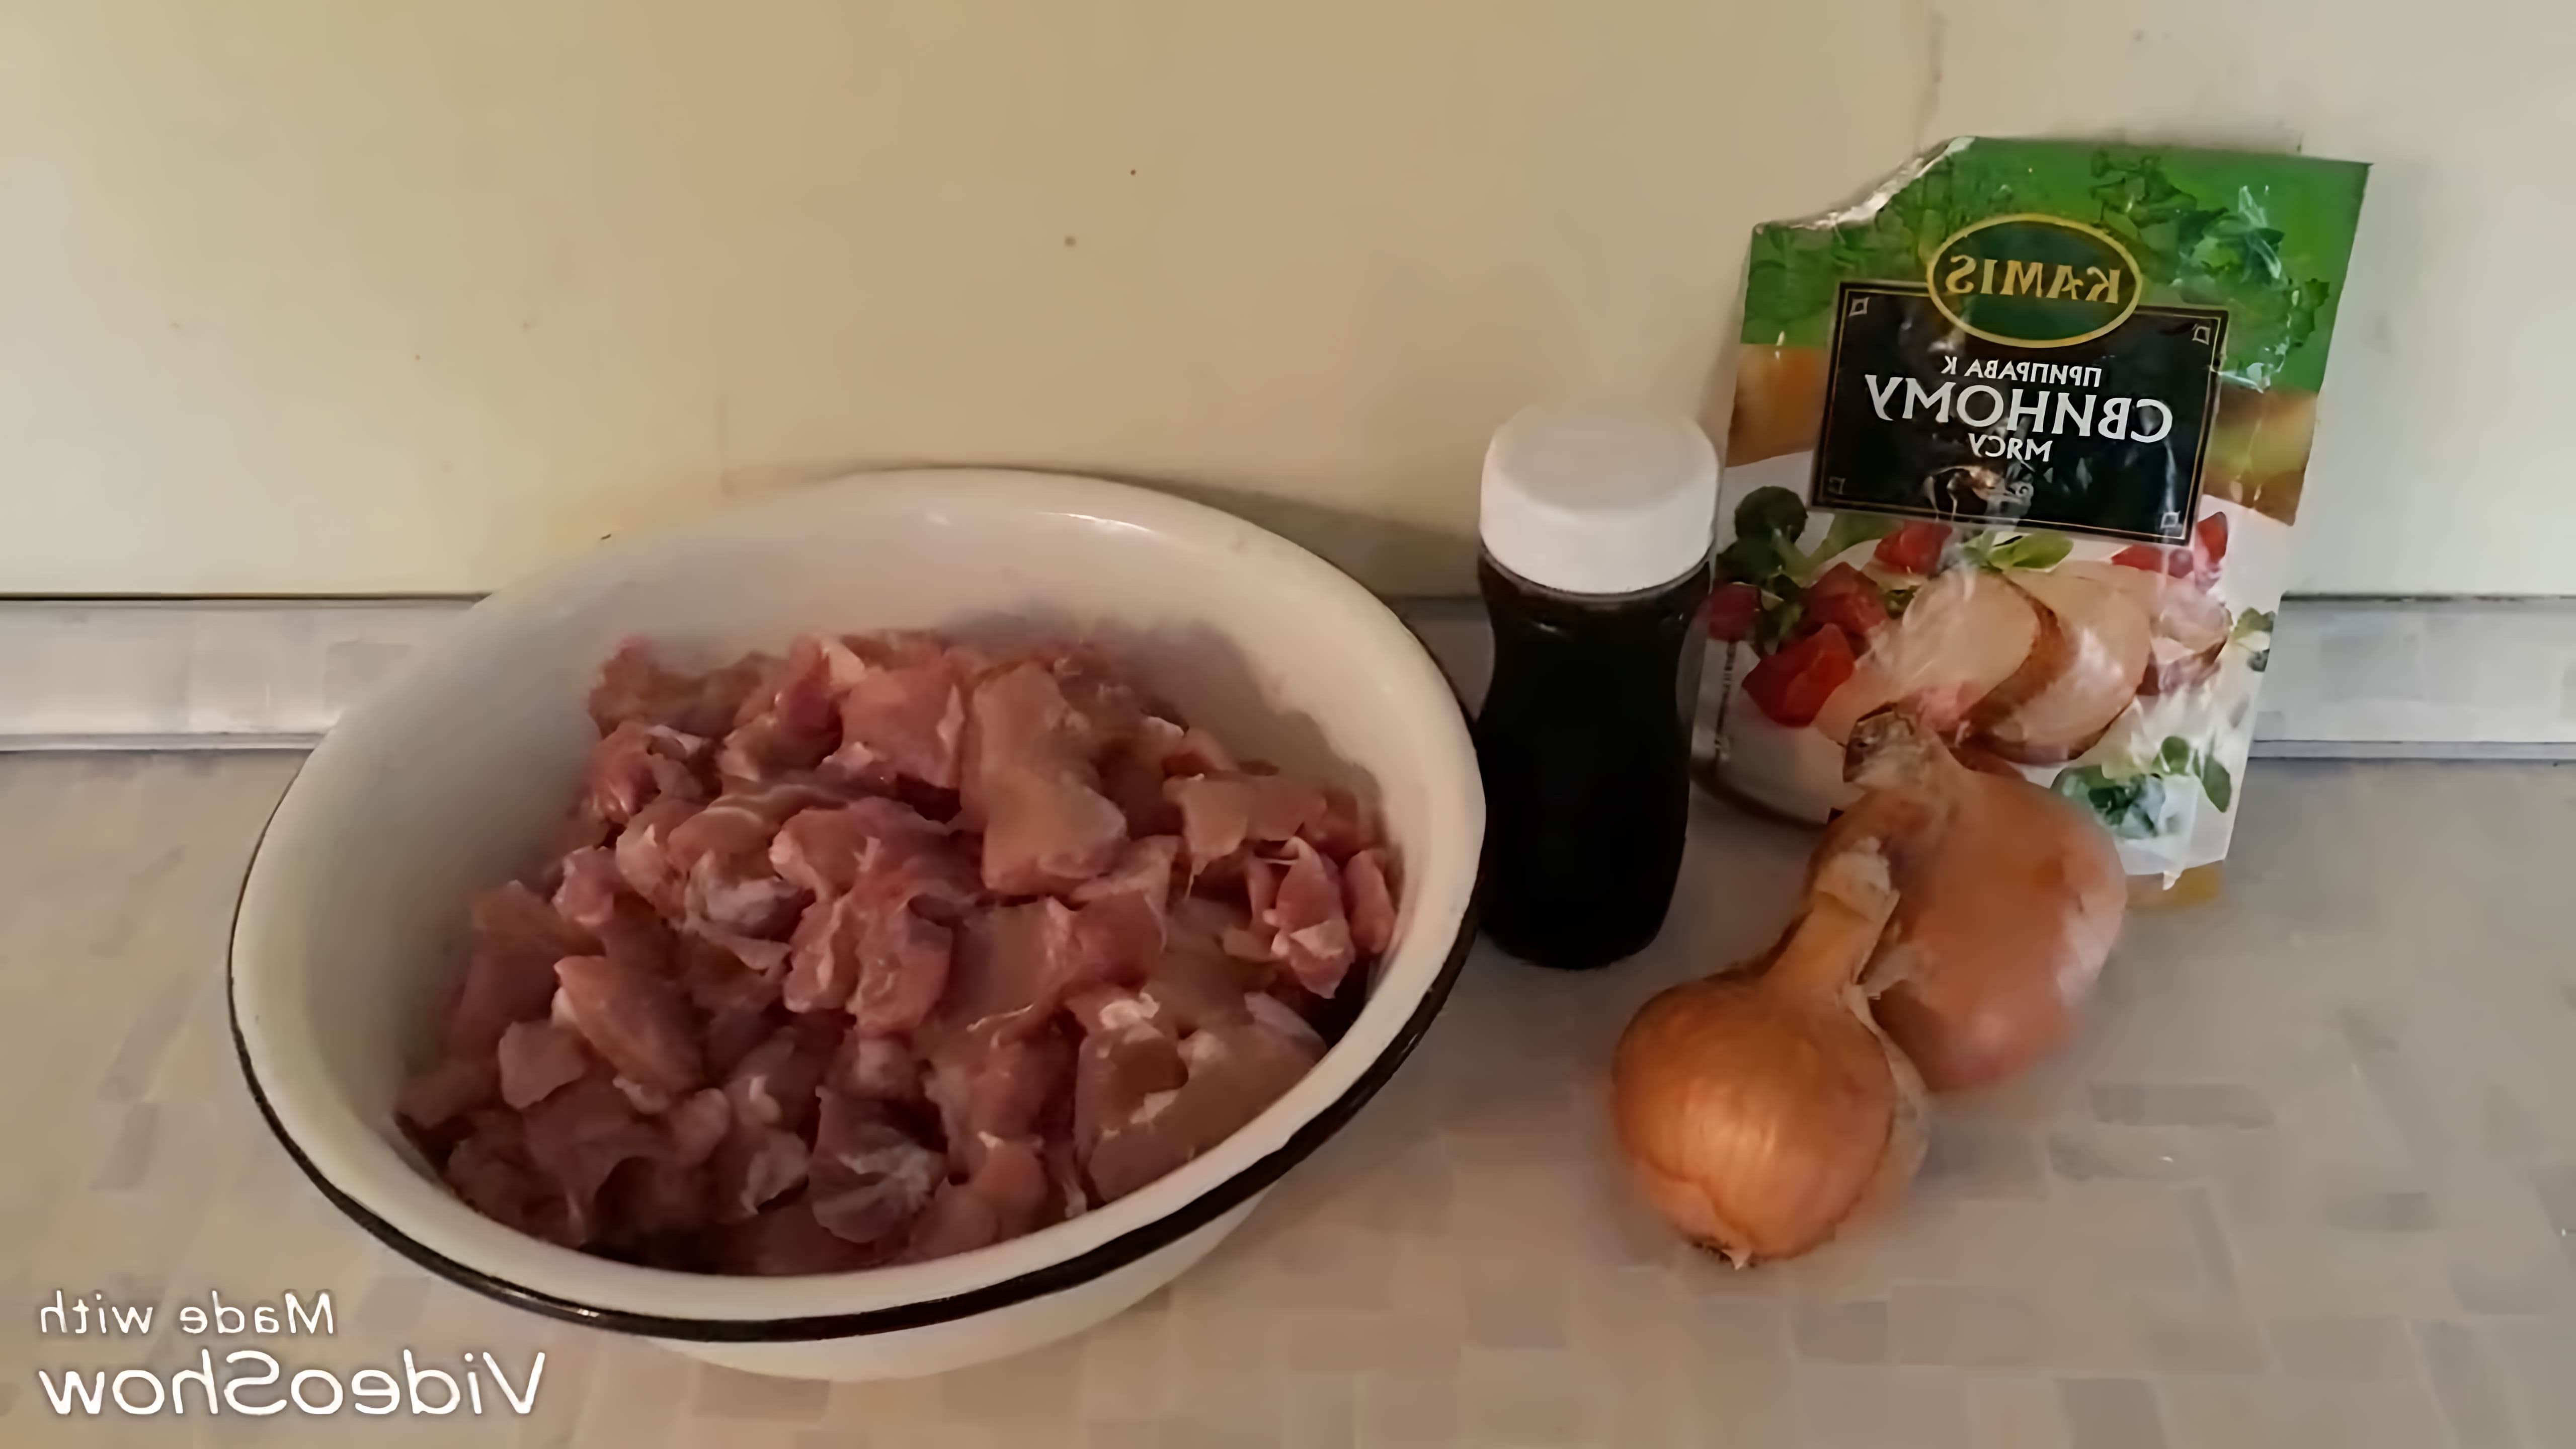 В этом видео демонстрируется процесс приготовления свинины с соевым соусом